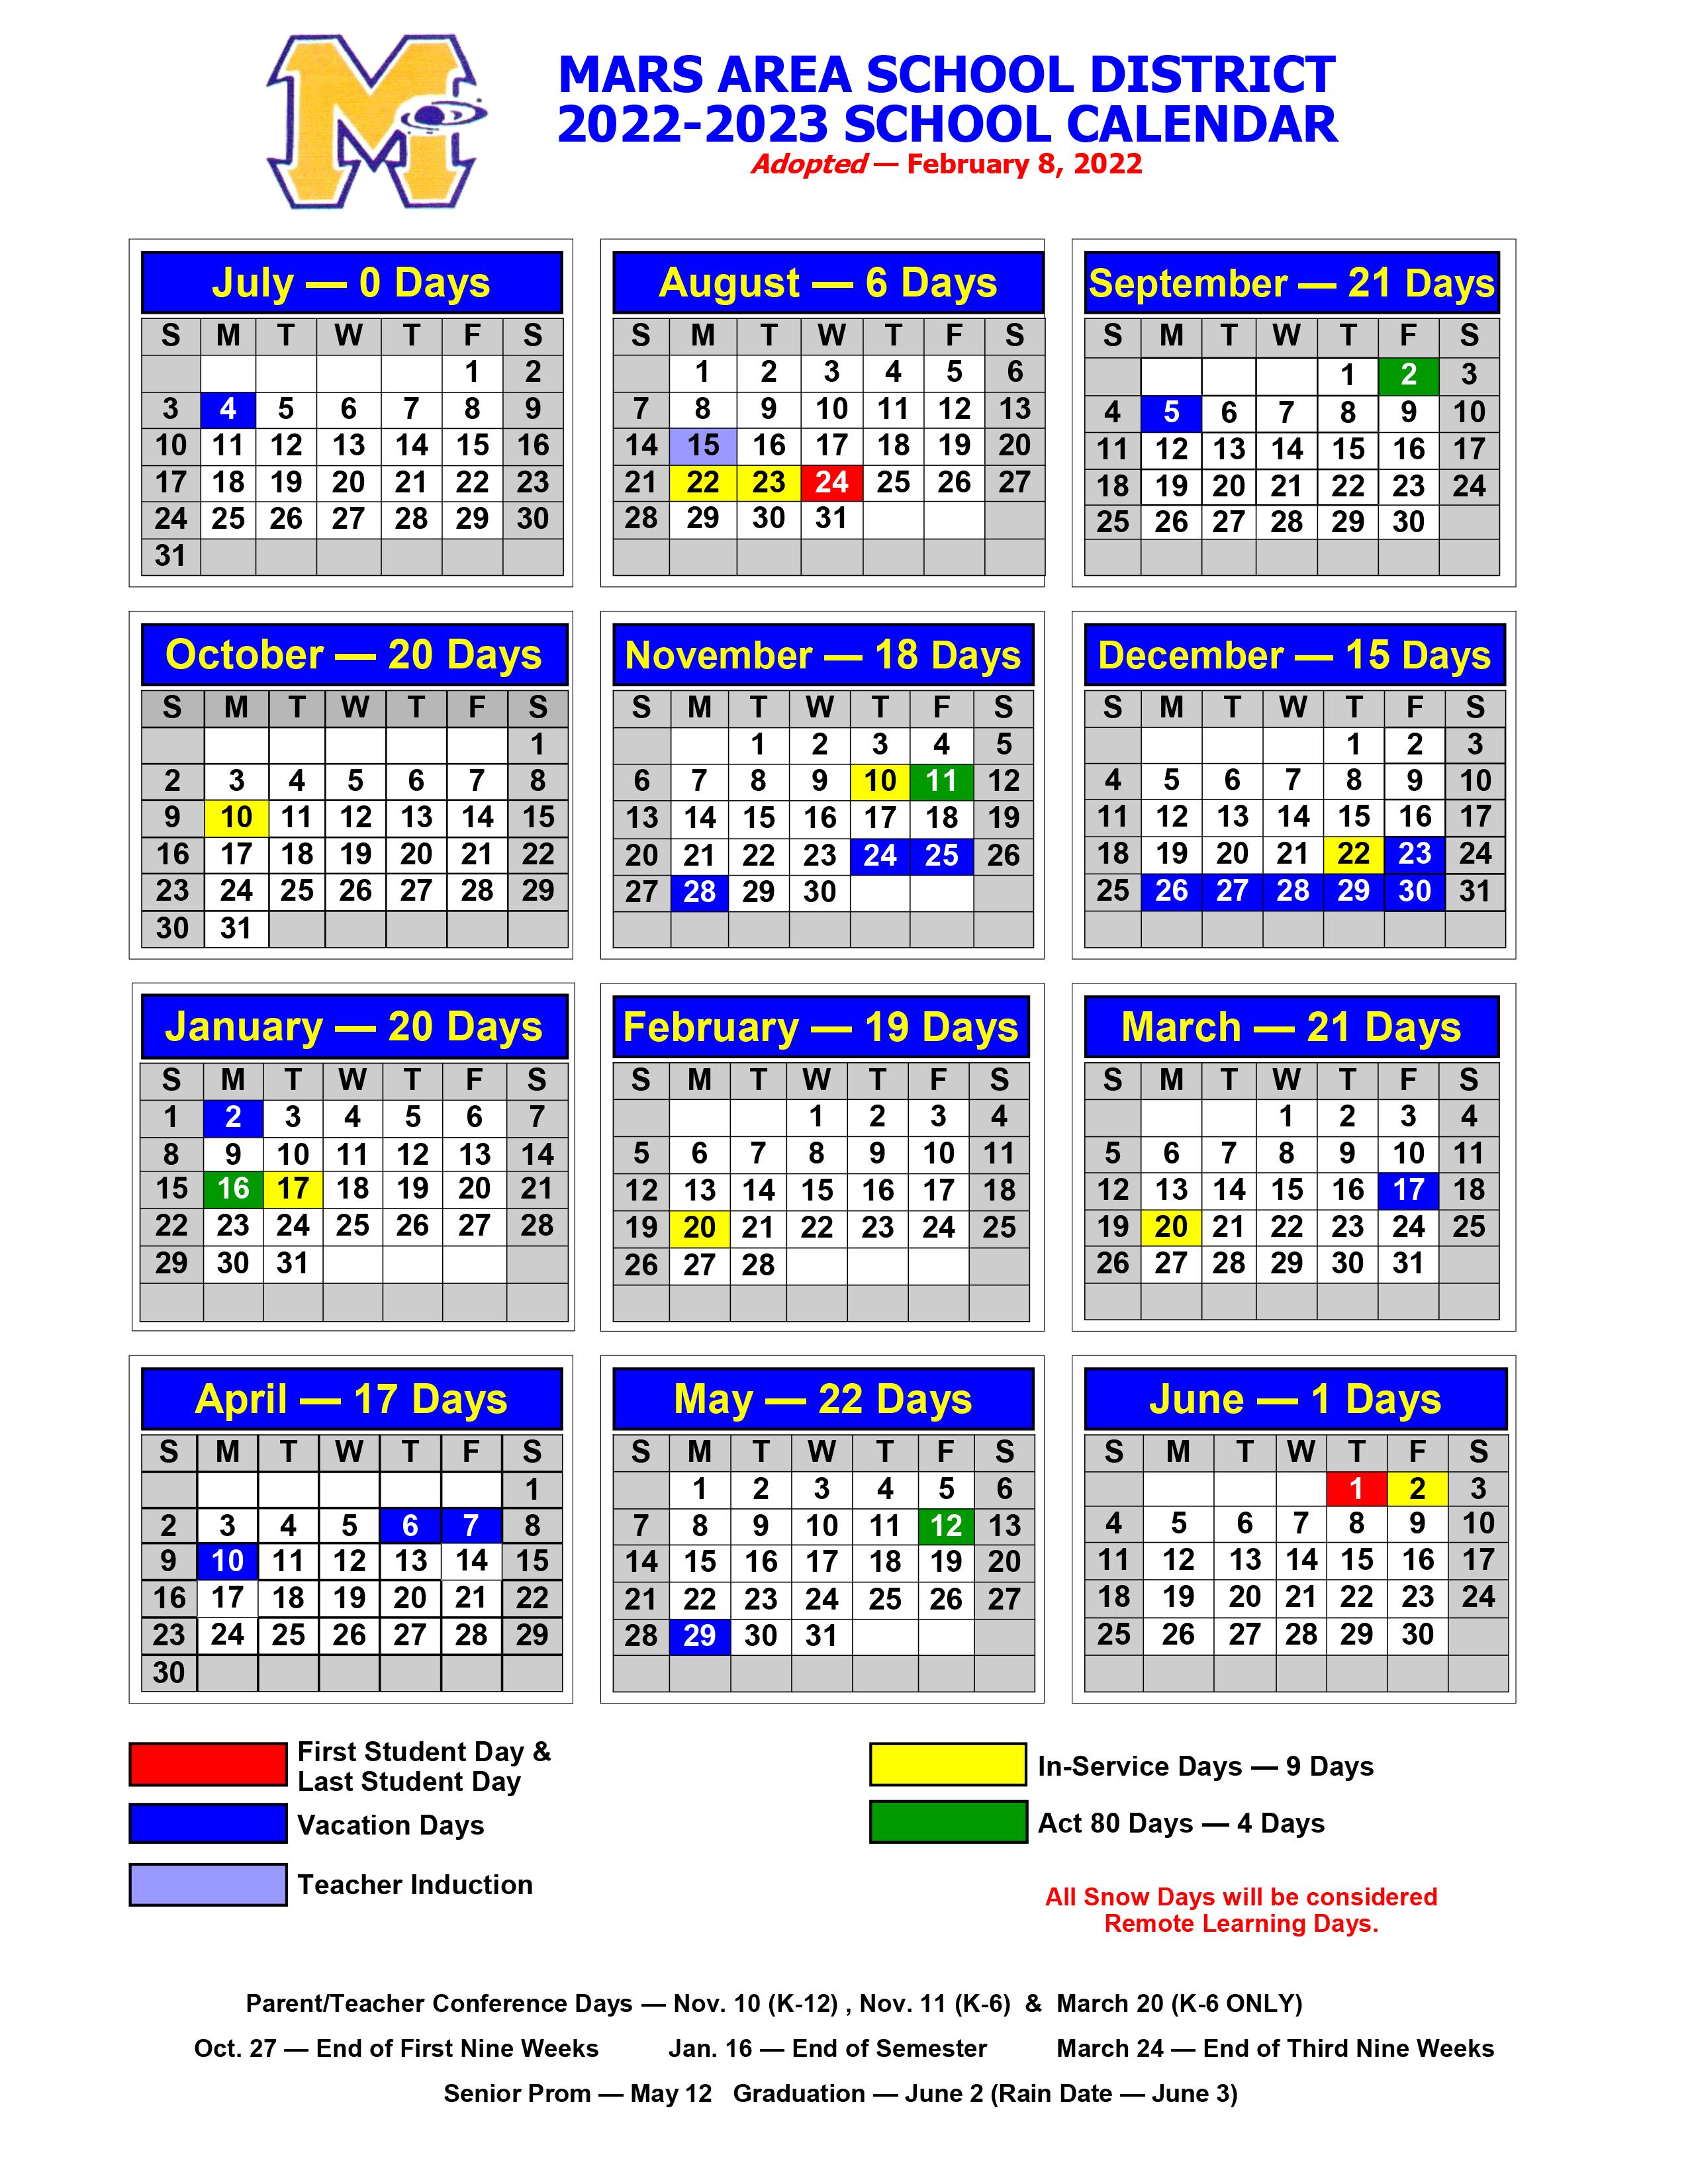 2022-2023 Mars Area School District Calendar 